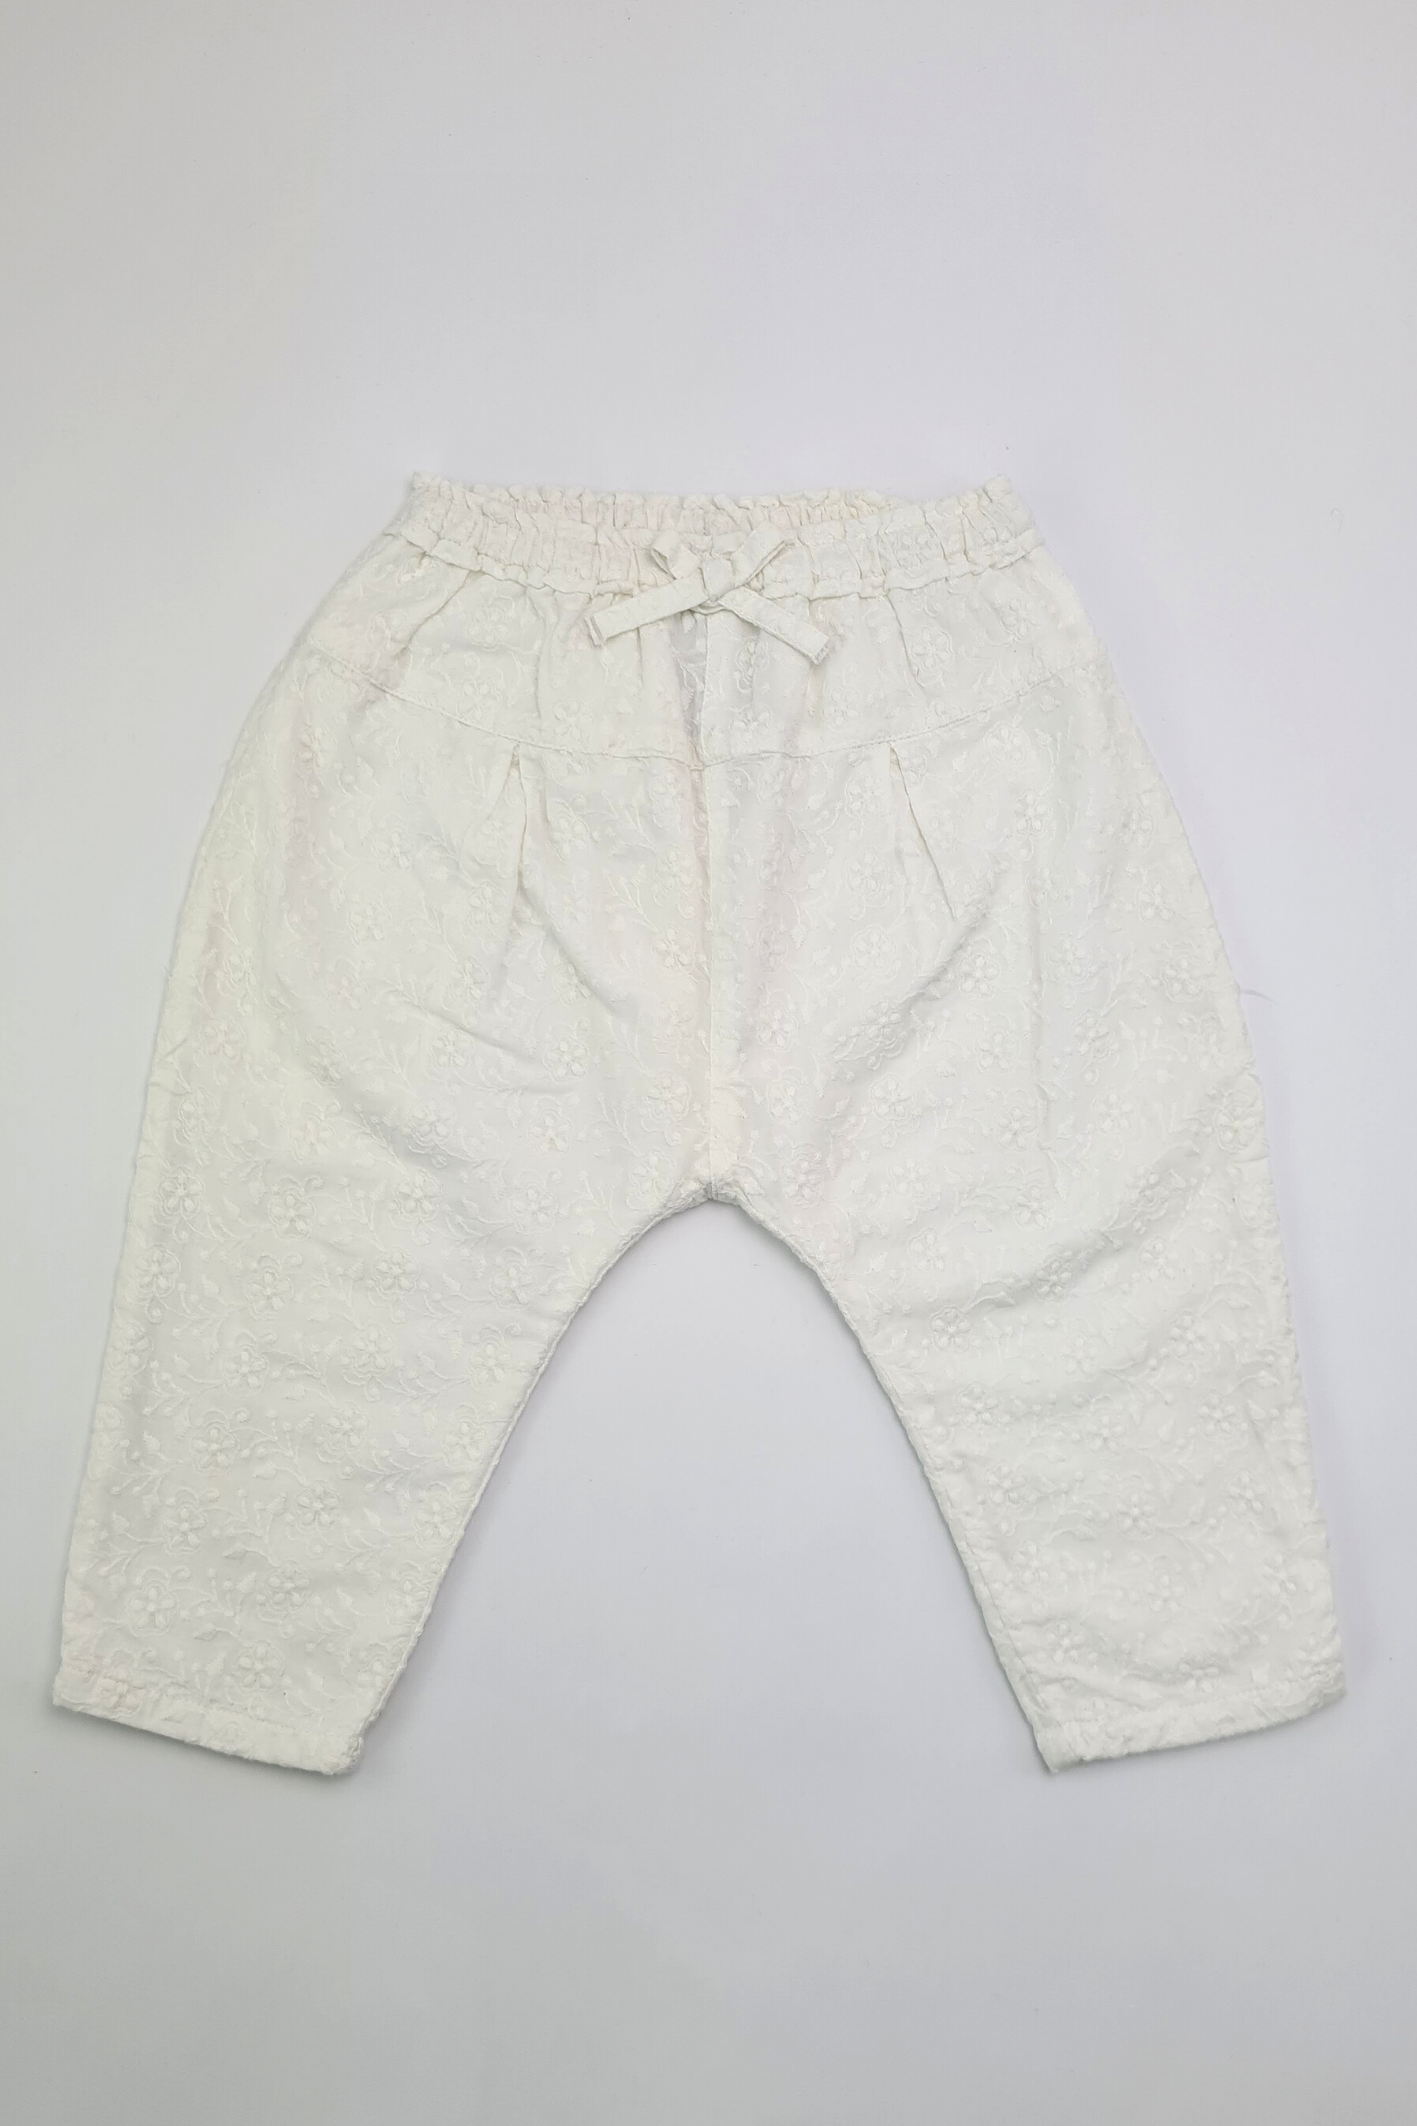 9-12 mois - Pantalon Blanc Brodé 100% Coton (Suivant)